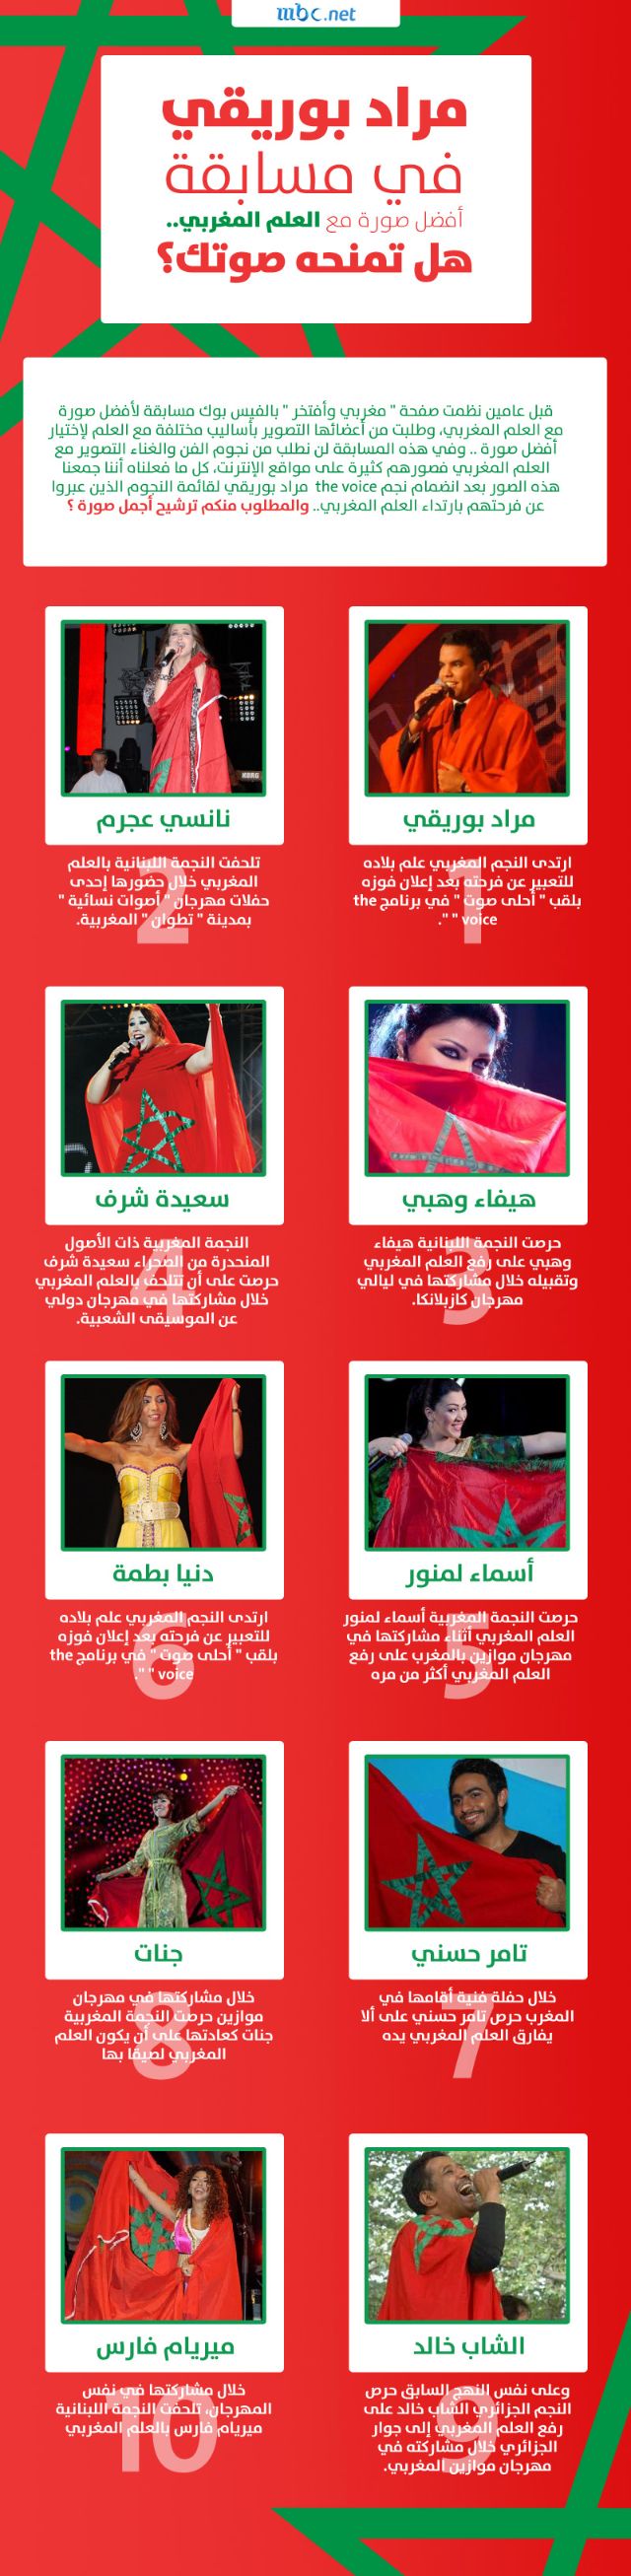 إنفوجرافيك مراد بوريقي في مسابقة أفضل صورة مع العلم المغربي في برنامج ذا فويس